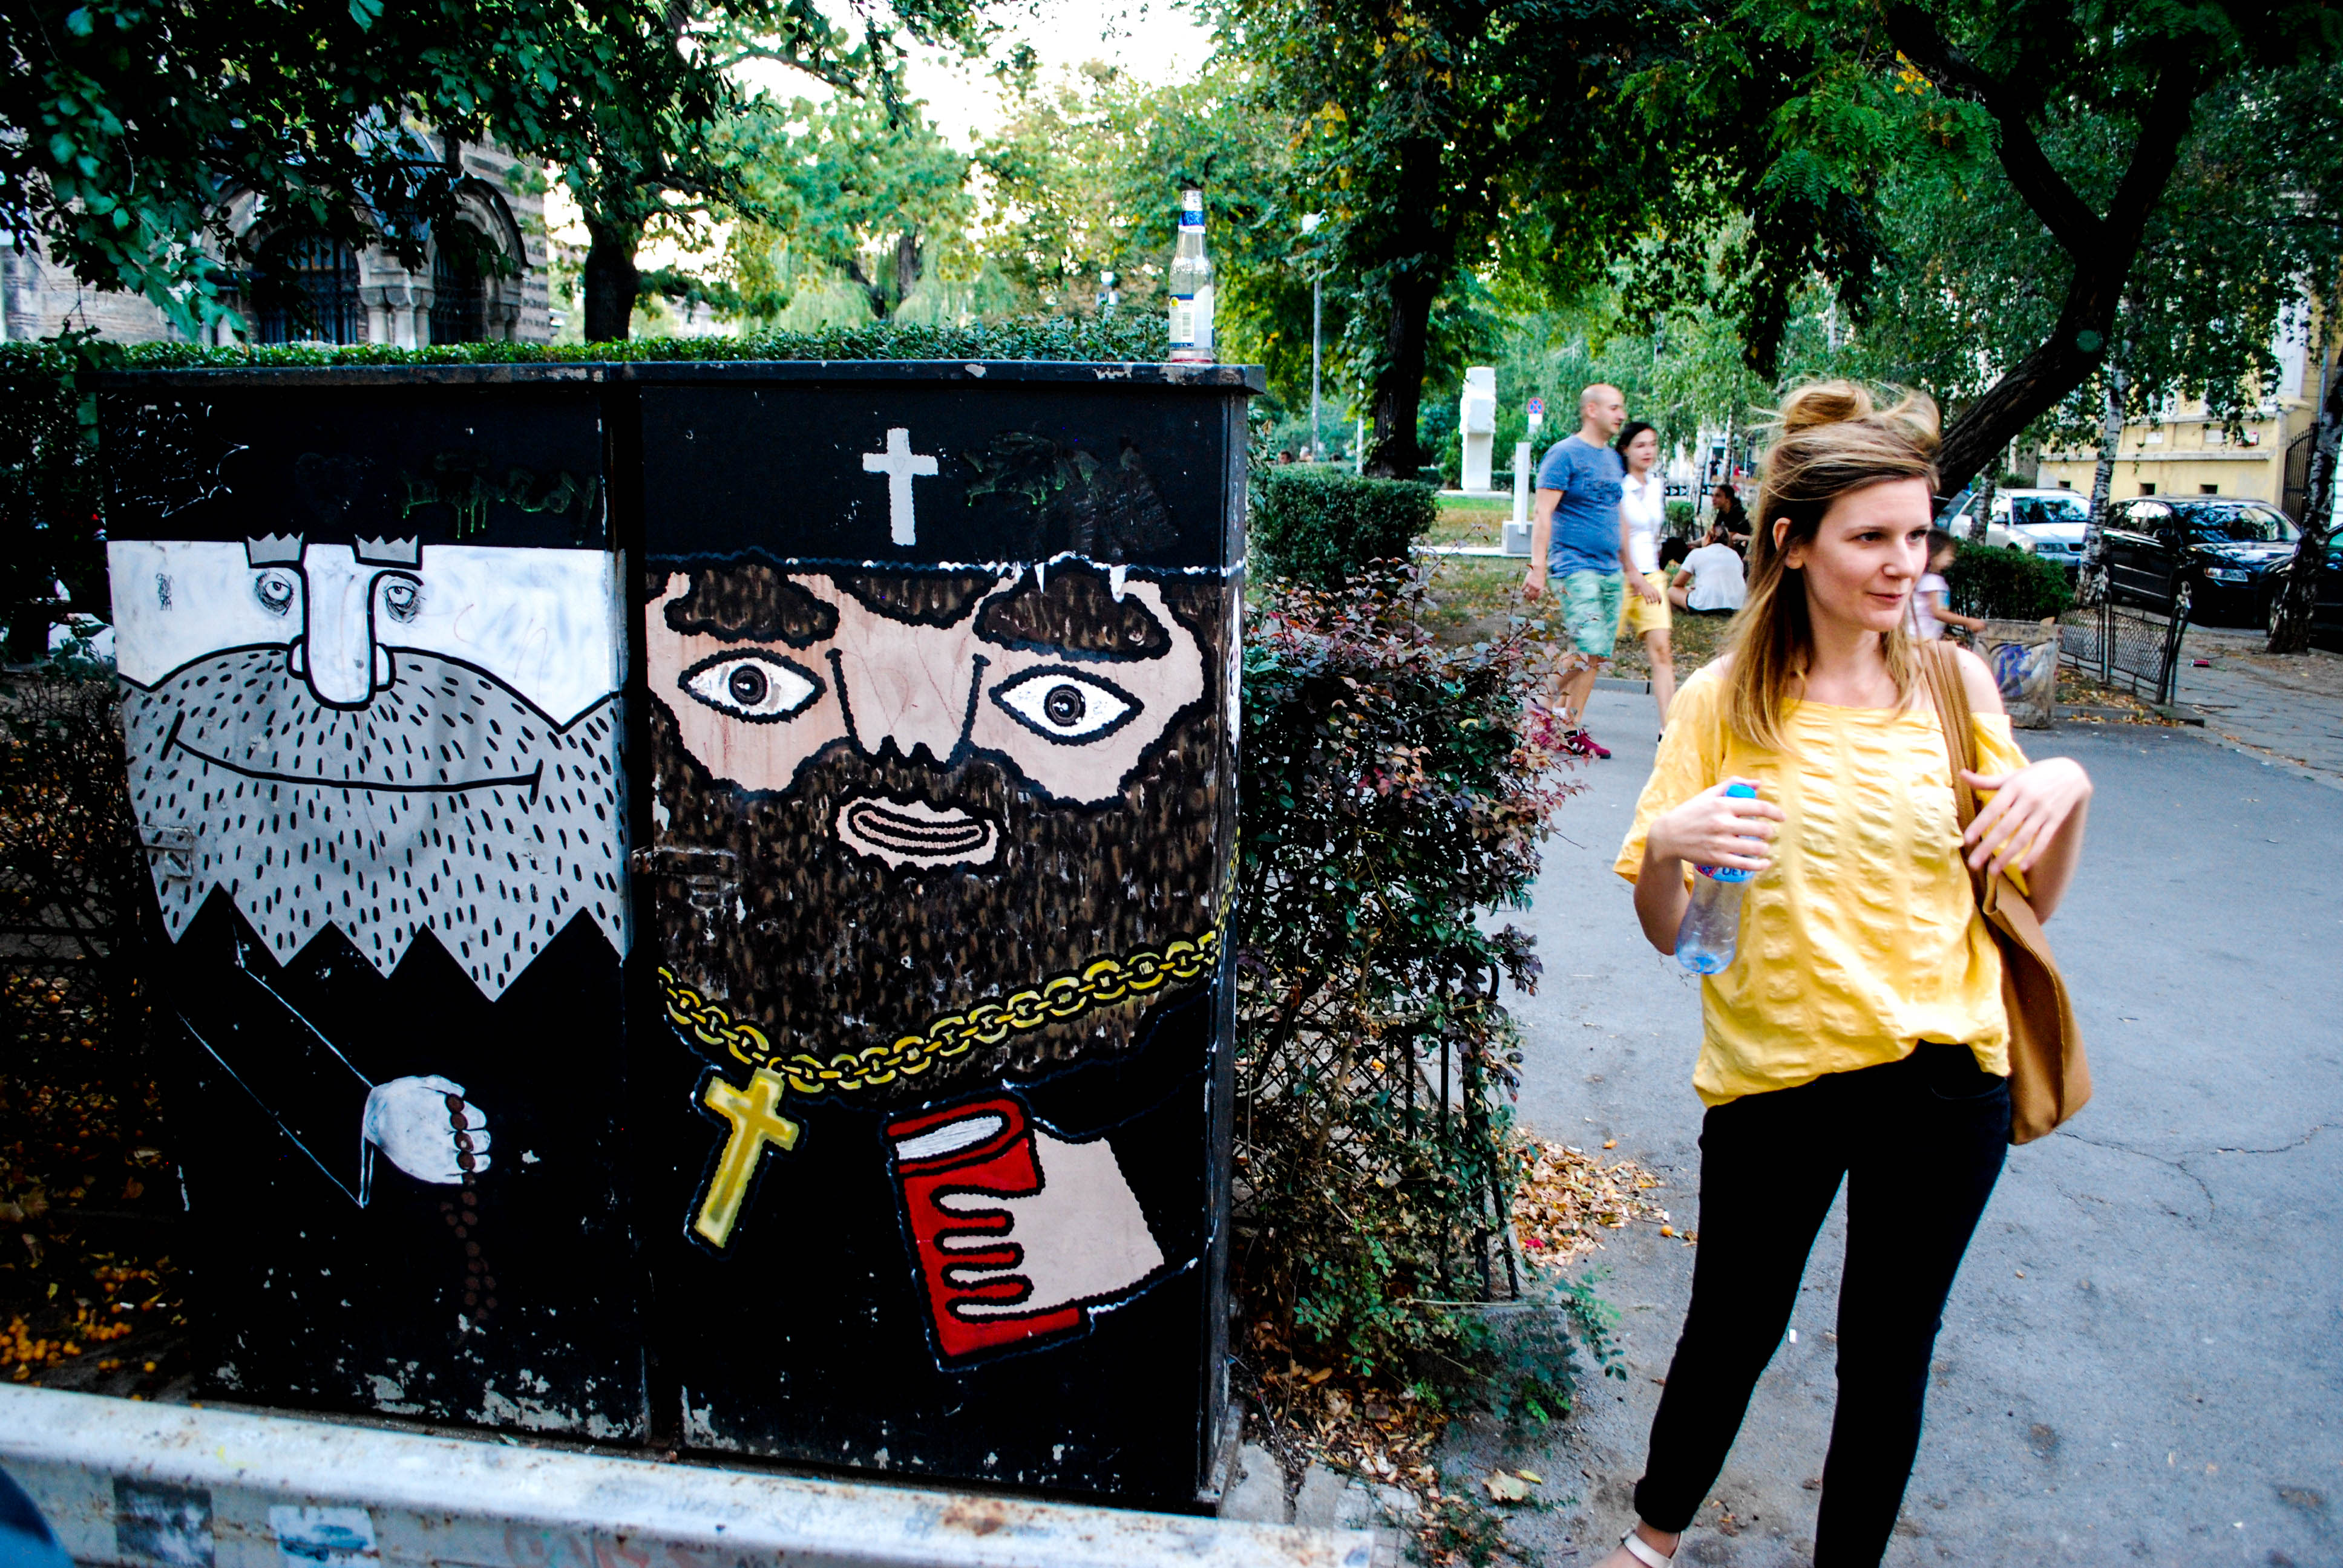 Гидът Стела показва пример за "стрийт-арт" върху кутия на трансформатор в центъра на София